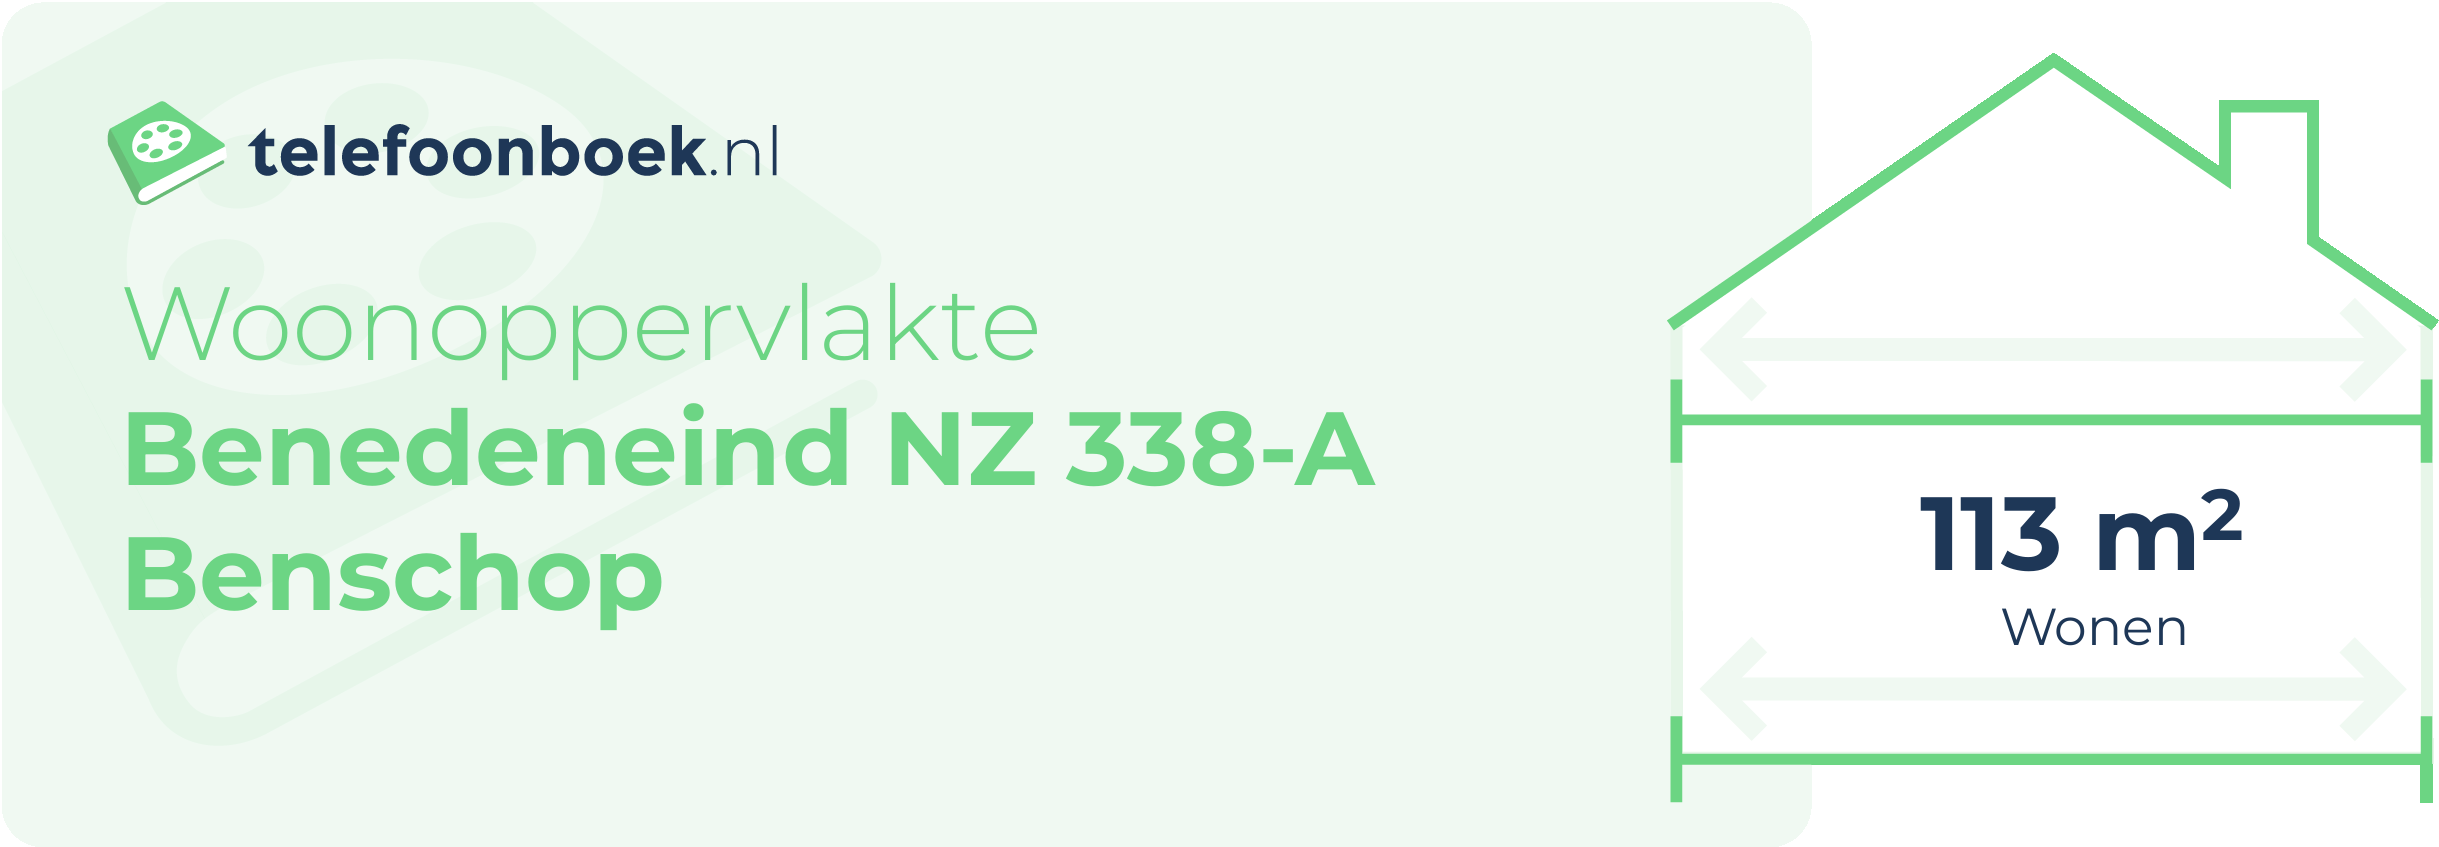 Woonoppervlakte Benedeneind NZ 338-A Benschop